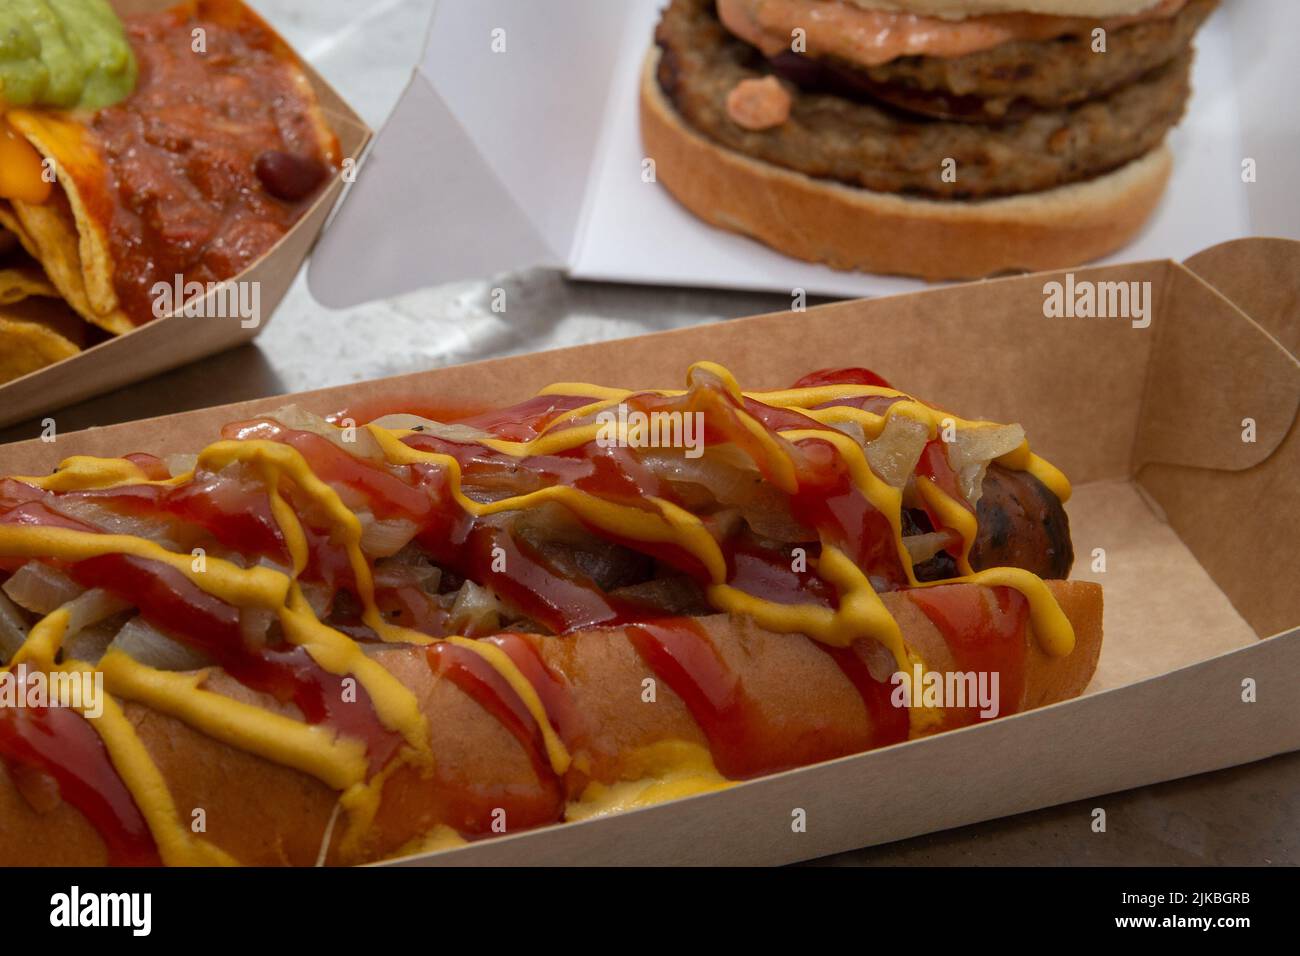 Selezione di cibo di strada hot dog, chili nachos e hamburger che serve suggerimento. Foto Stock